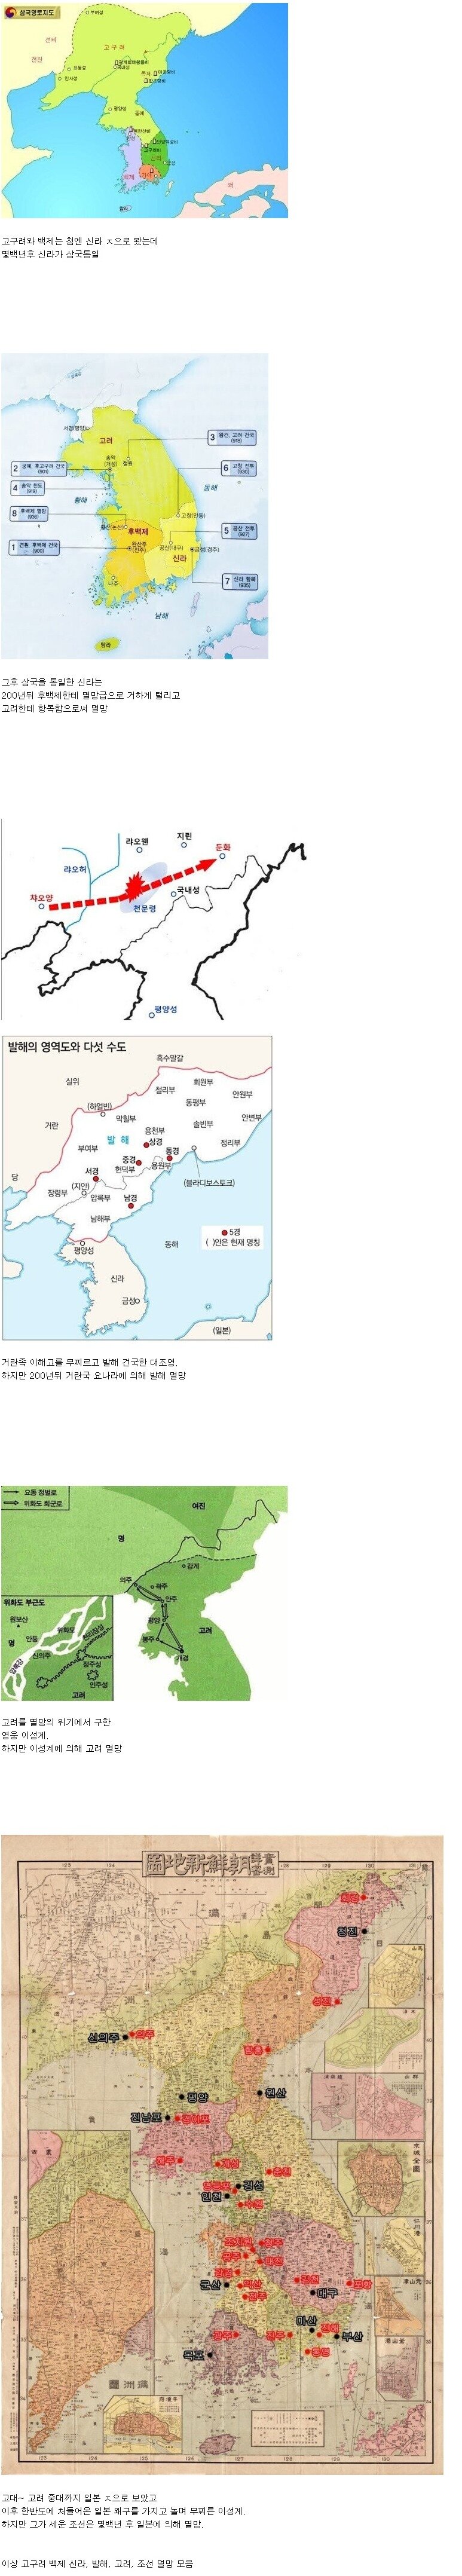 한국사의 아이러니한 국가 멸망 모음